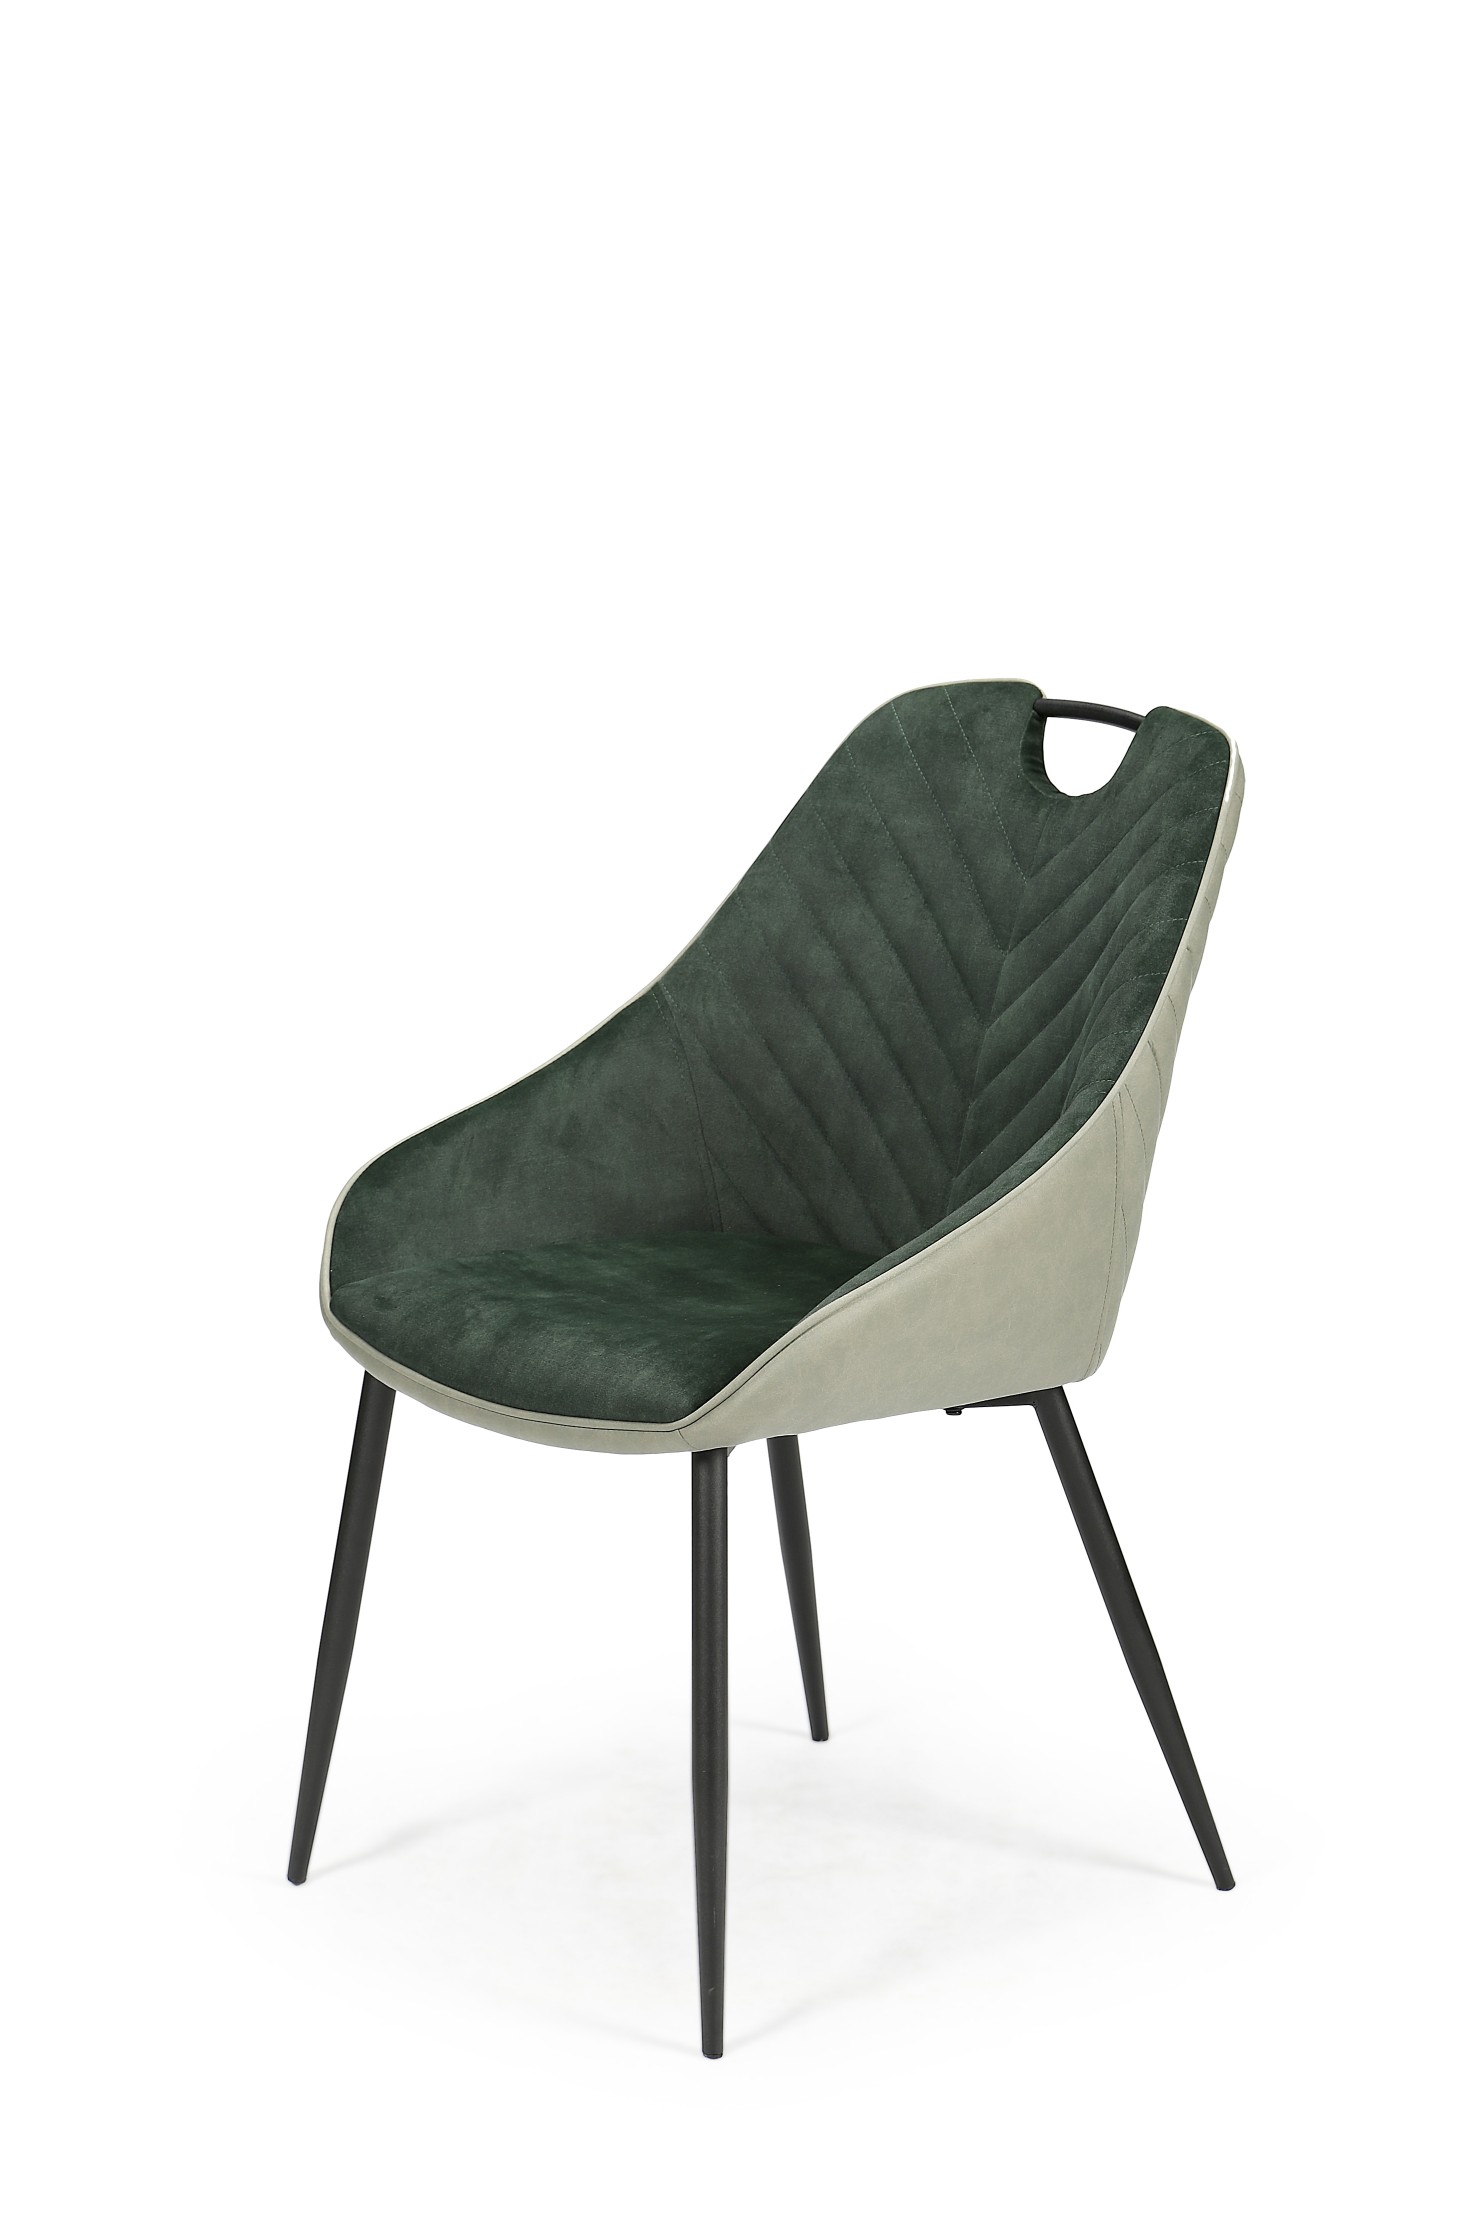 K412 krzesło ciemny zielony / jasny zielony